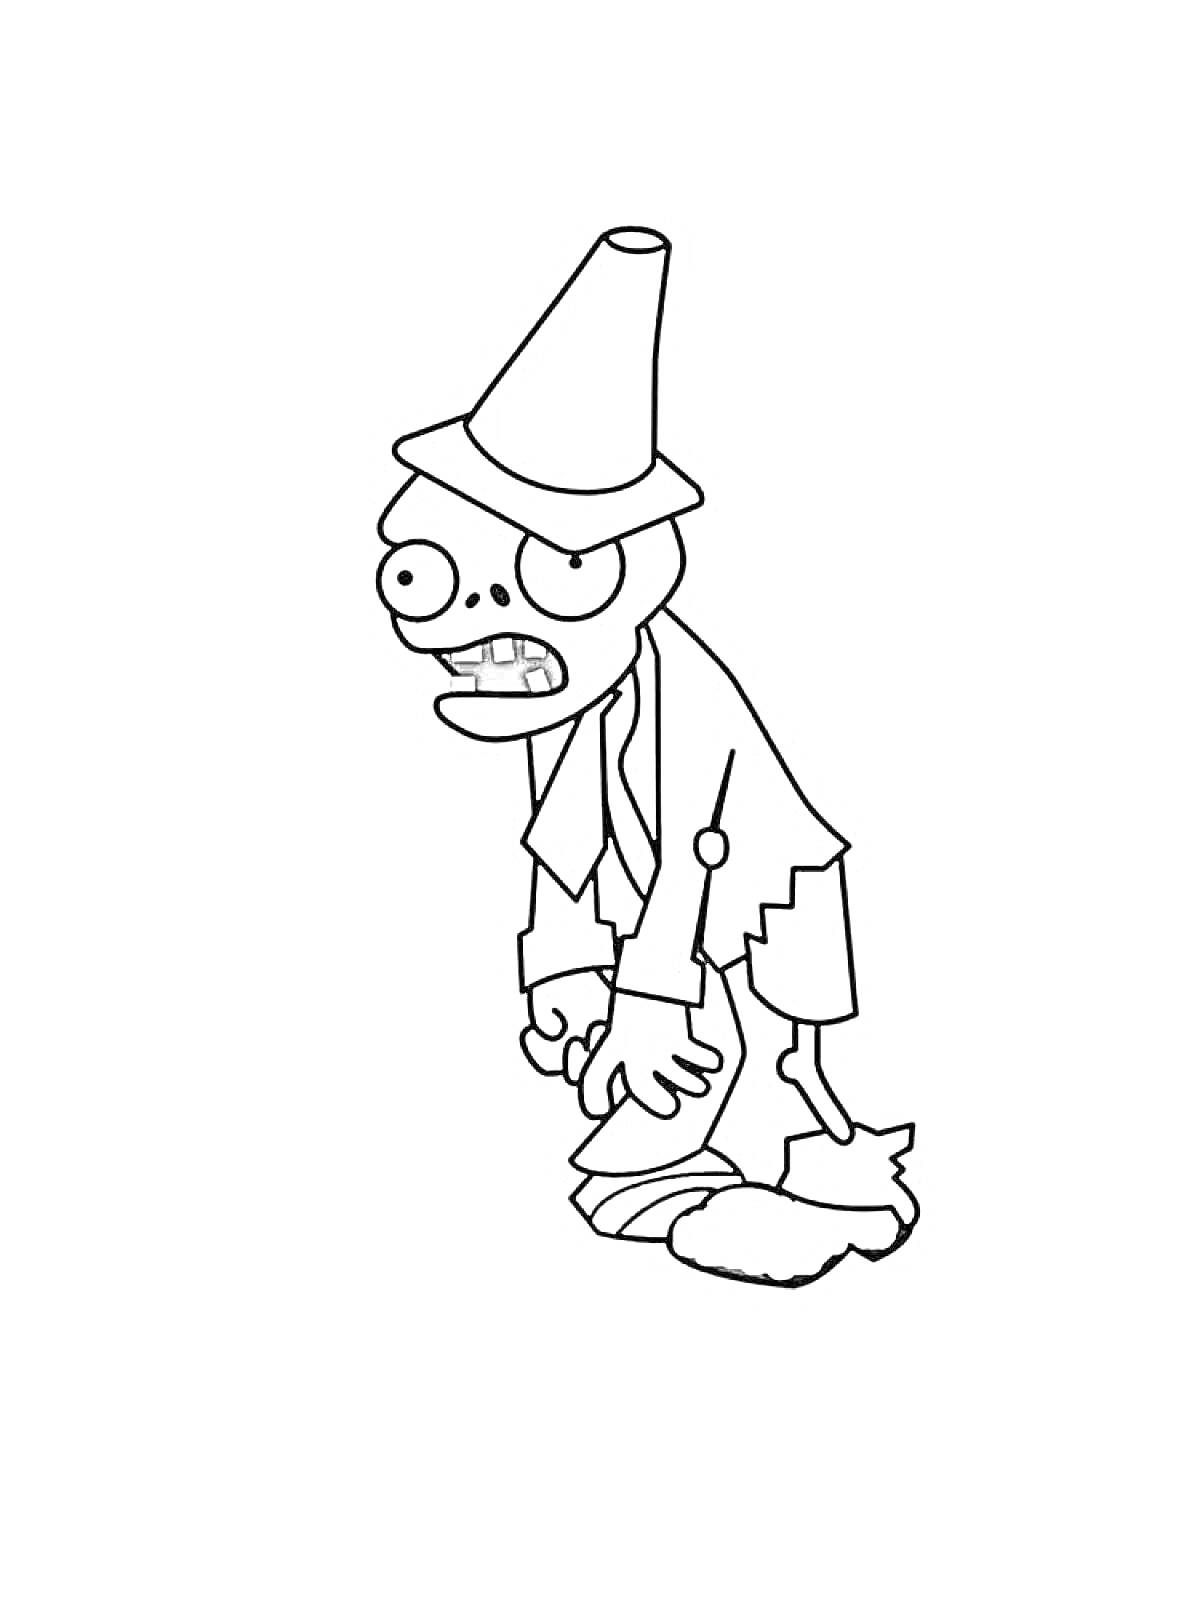 Раскраска Зомби с дорожным конусом на голове в рваной одежде